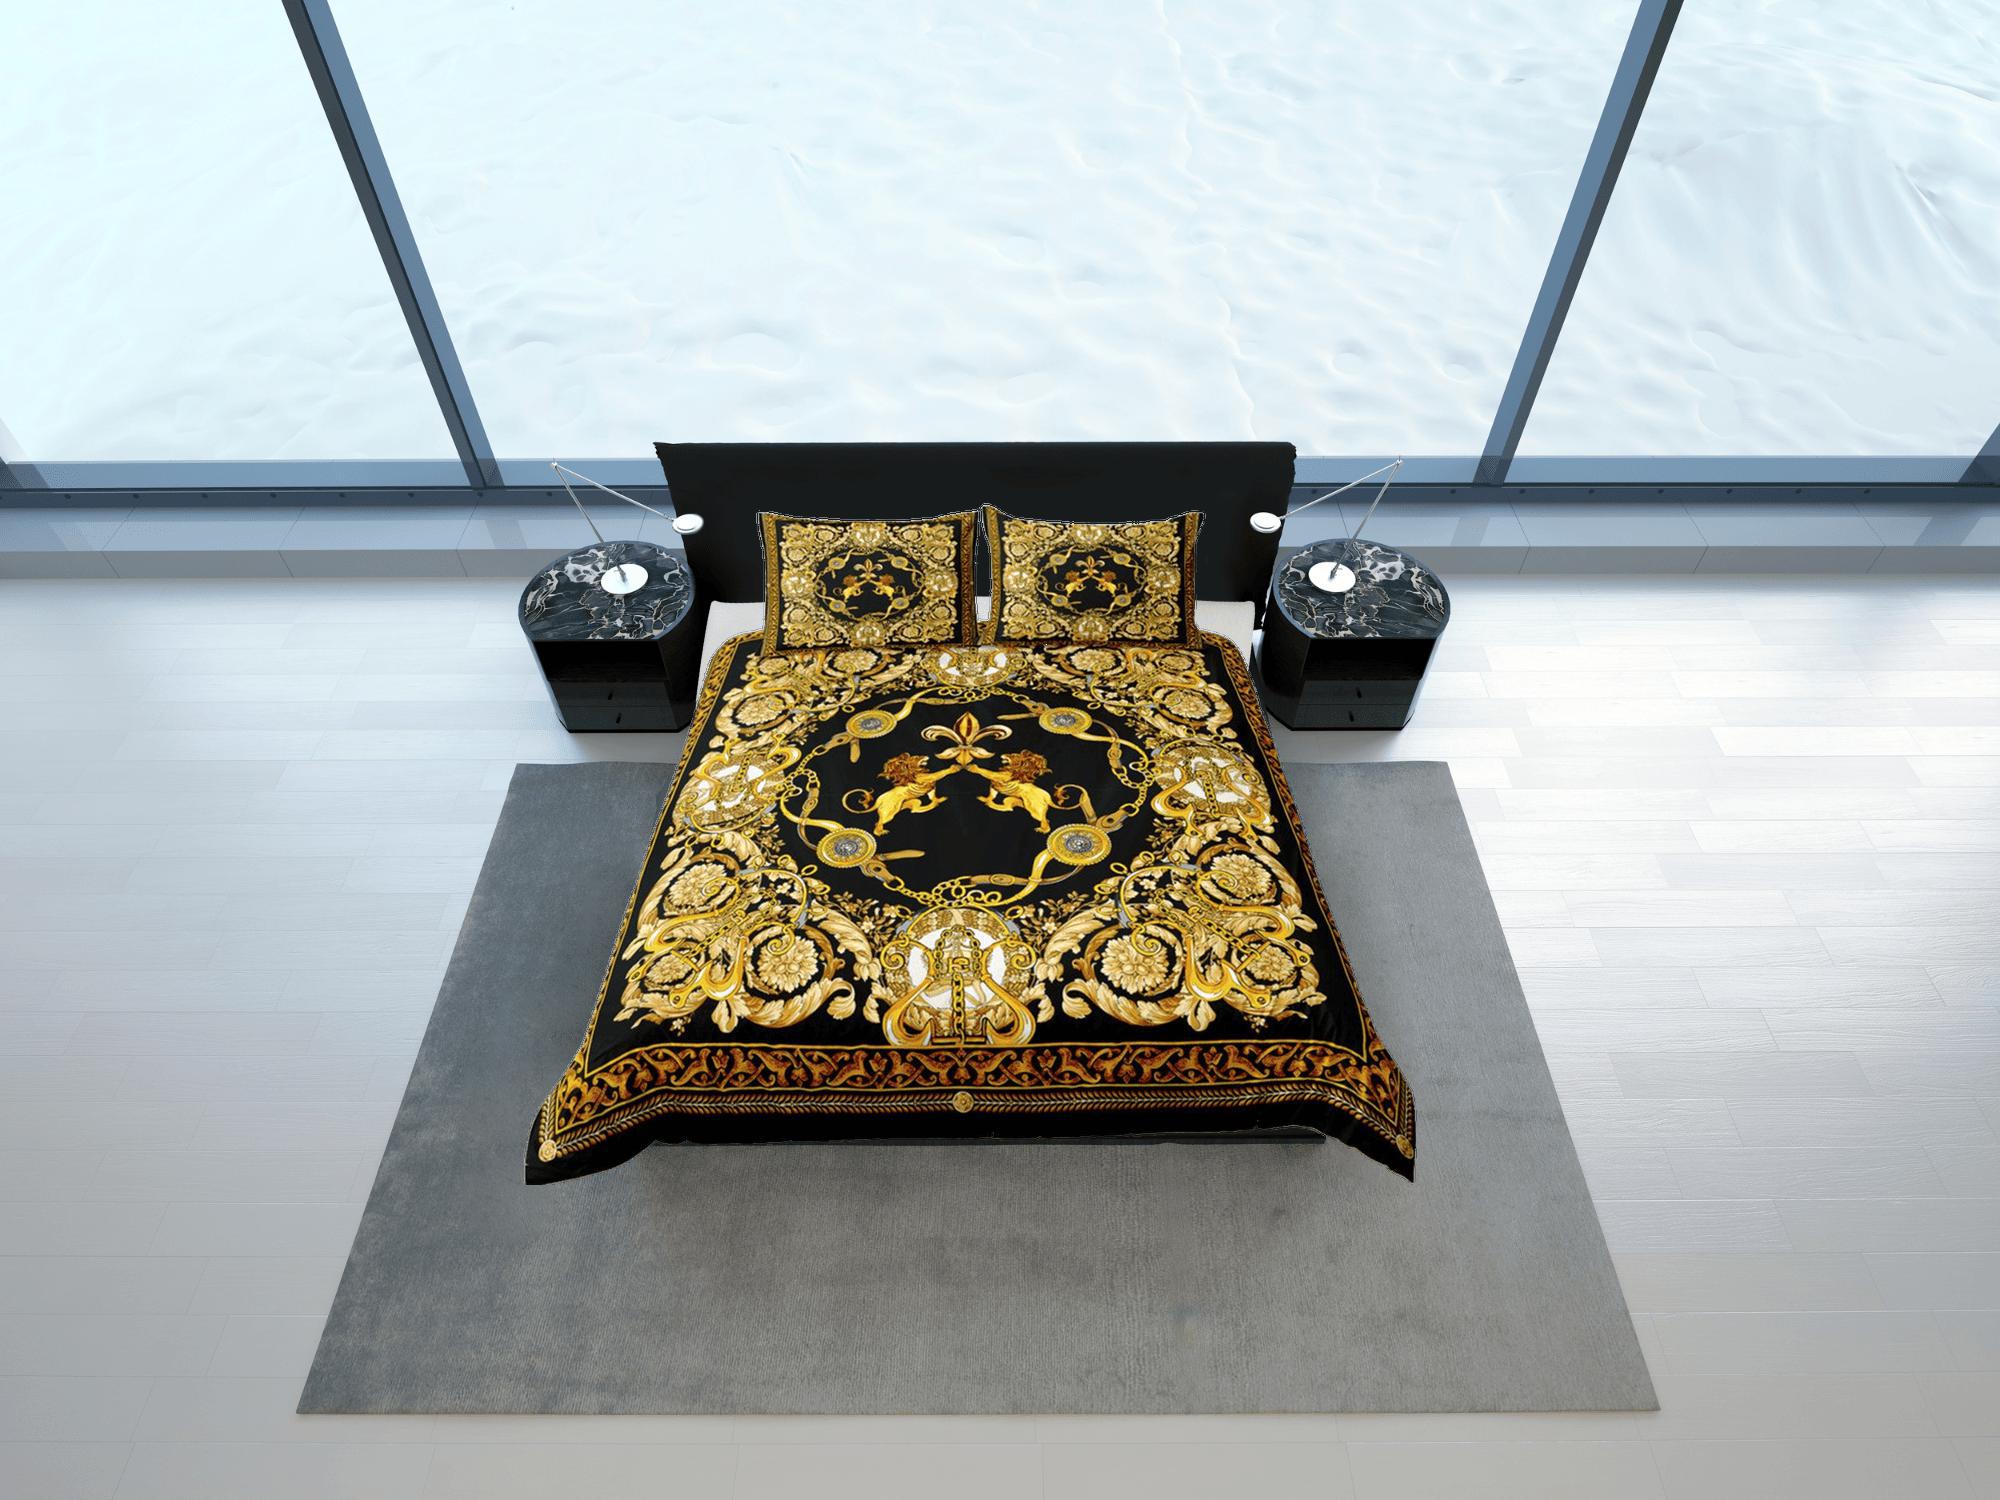 daintyduvet Baroque Black Gold Lion Luxury Duvet Cover Aesthetic Bedding Set Full Victorian Decor